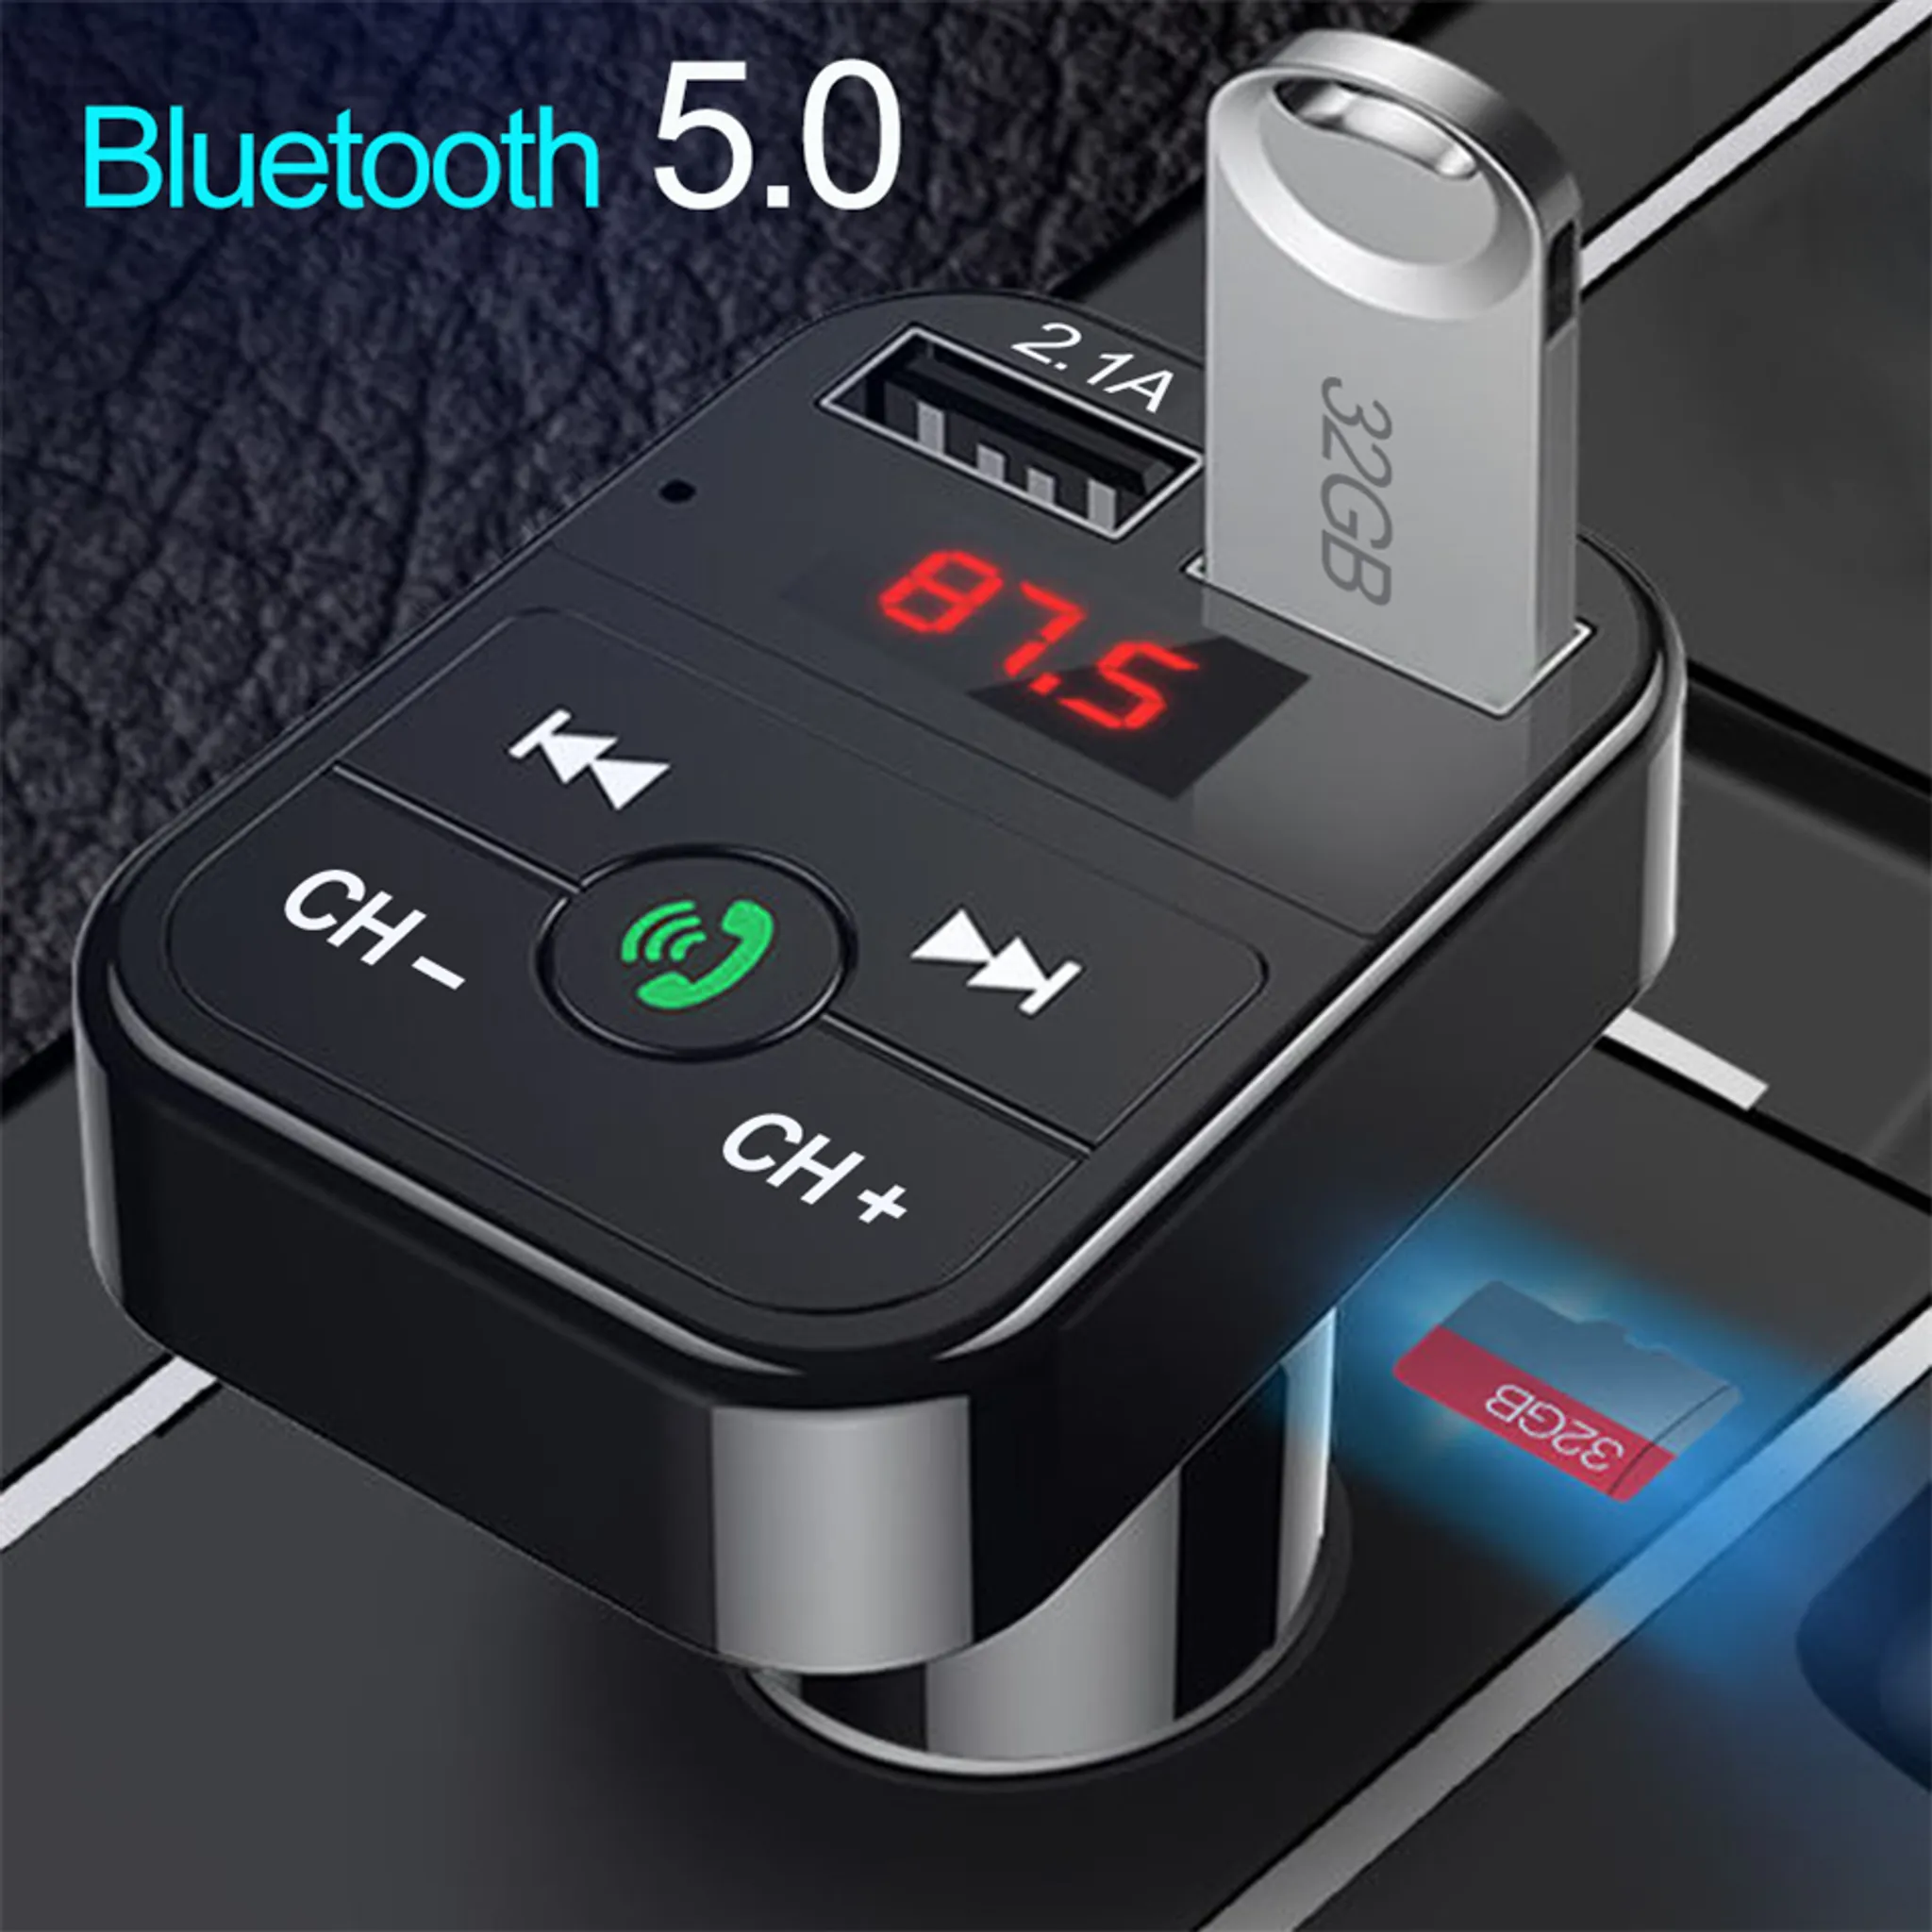 Retoo Bluetooth Adapter für Auto Radio Zigarettenanzünder BT 5.0 FM  Transmitter Freisprecheinrichtung Dual 2 USB Ports Anschlüsse QC 3.0  Ladegerät KFZ